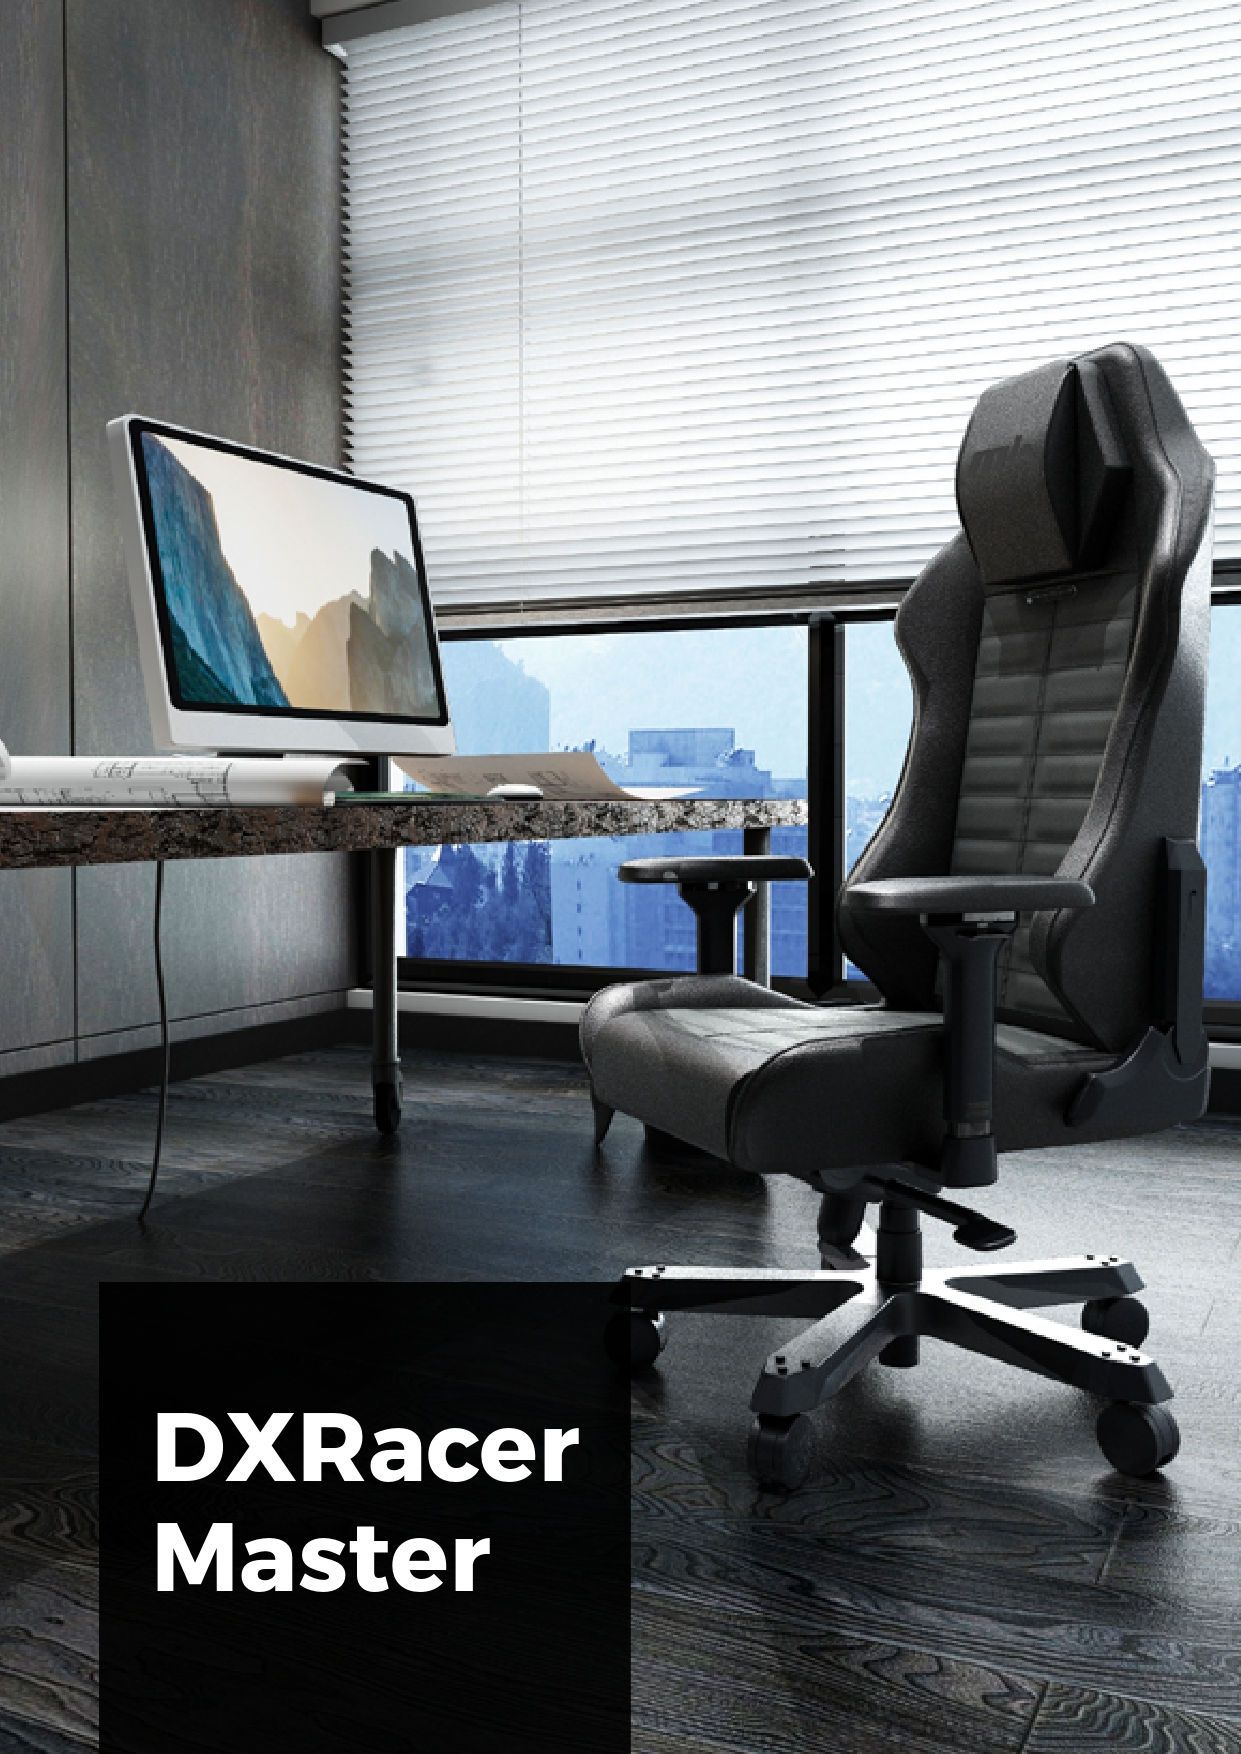 Кресло для геймеров DXRACER MASTER Max DMC-I233S-W-A2 белое: купить в мебельном магазине МебельОК